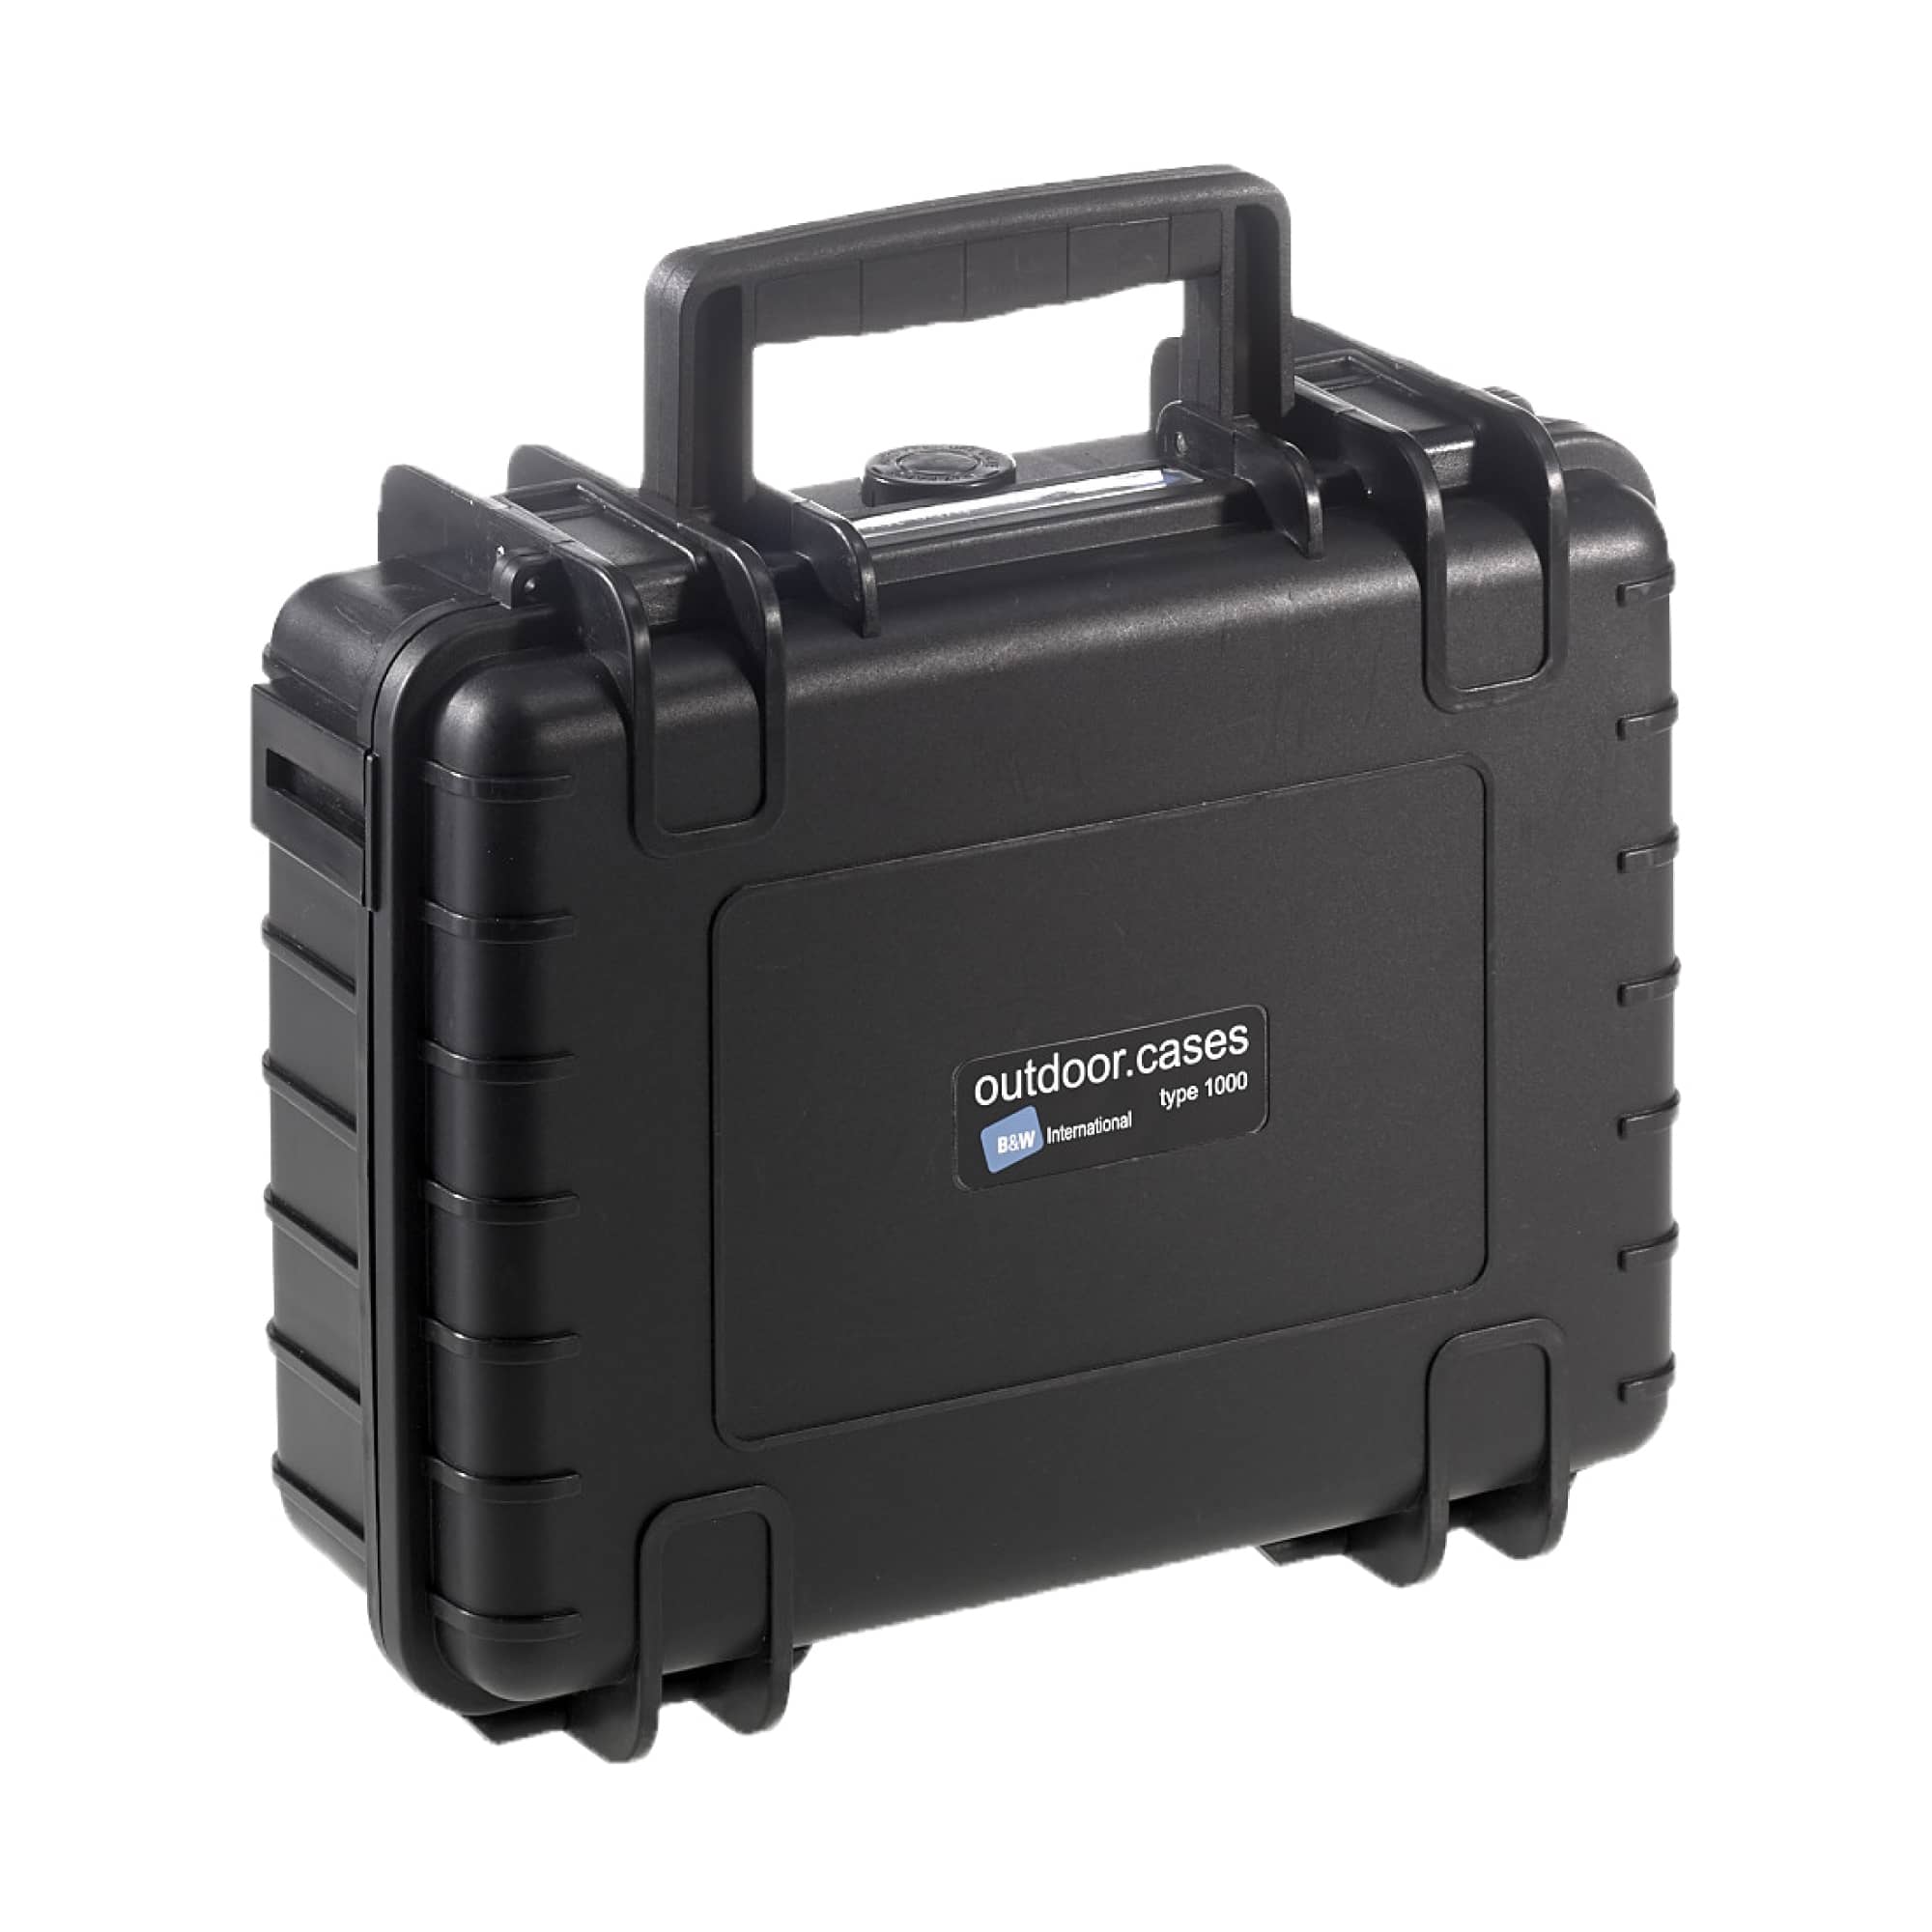 B&W Outdoor Case Typ 1000 schwarz mit variabler Facheinteilung (RPD)